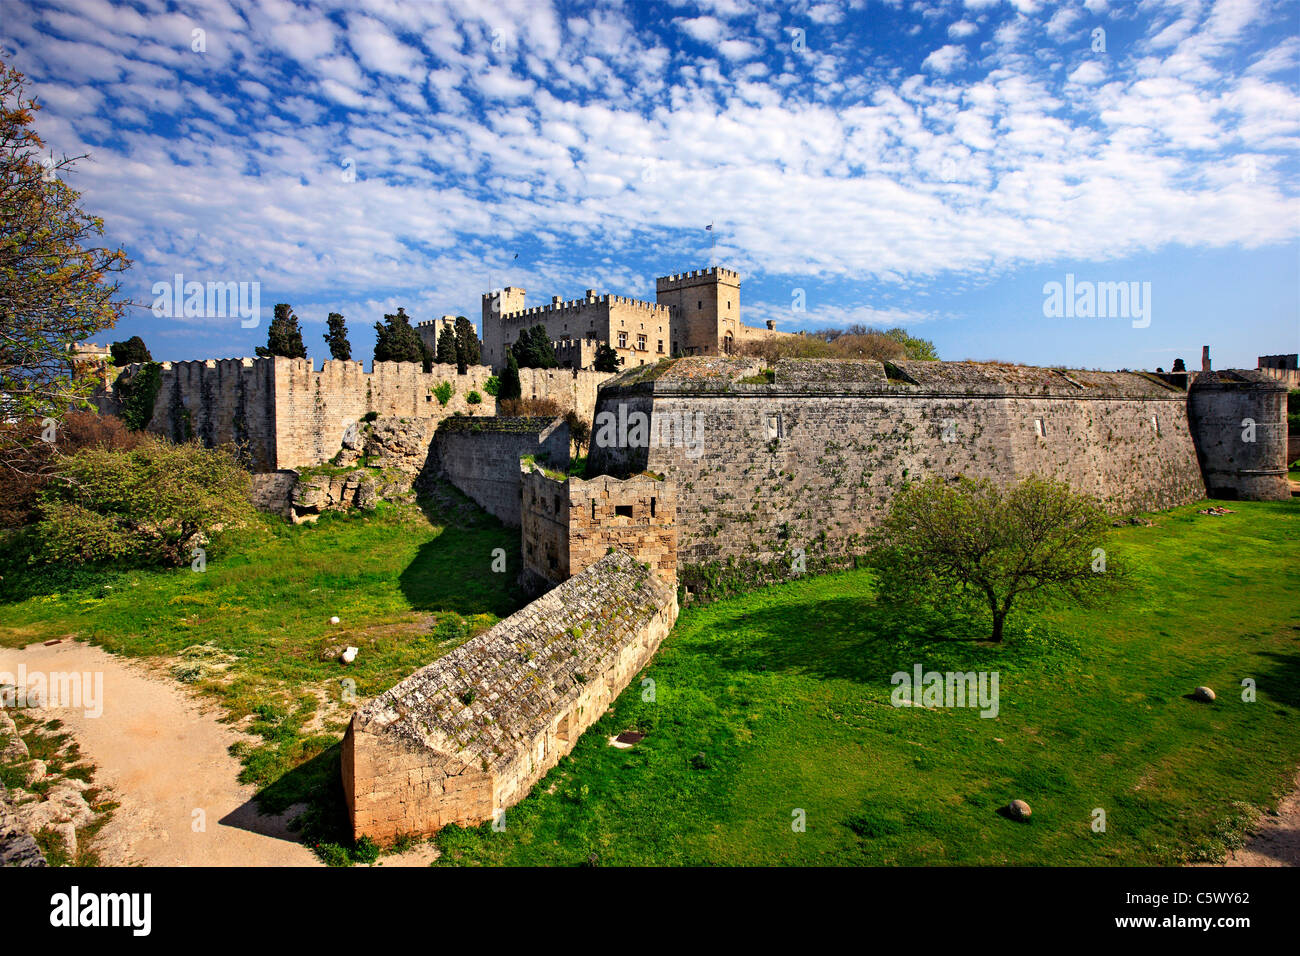 Le palais du Grand Maître, derrière les murs et le fossé de la ville médiévale de Rhodes island, Grèce Banque D'Images